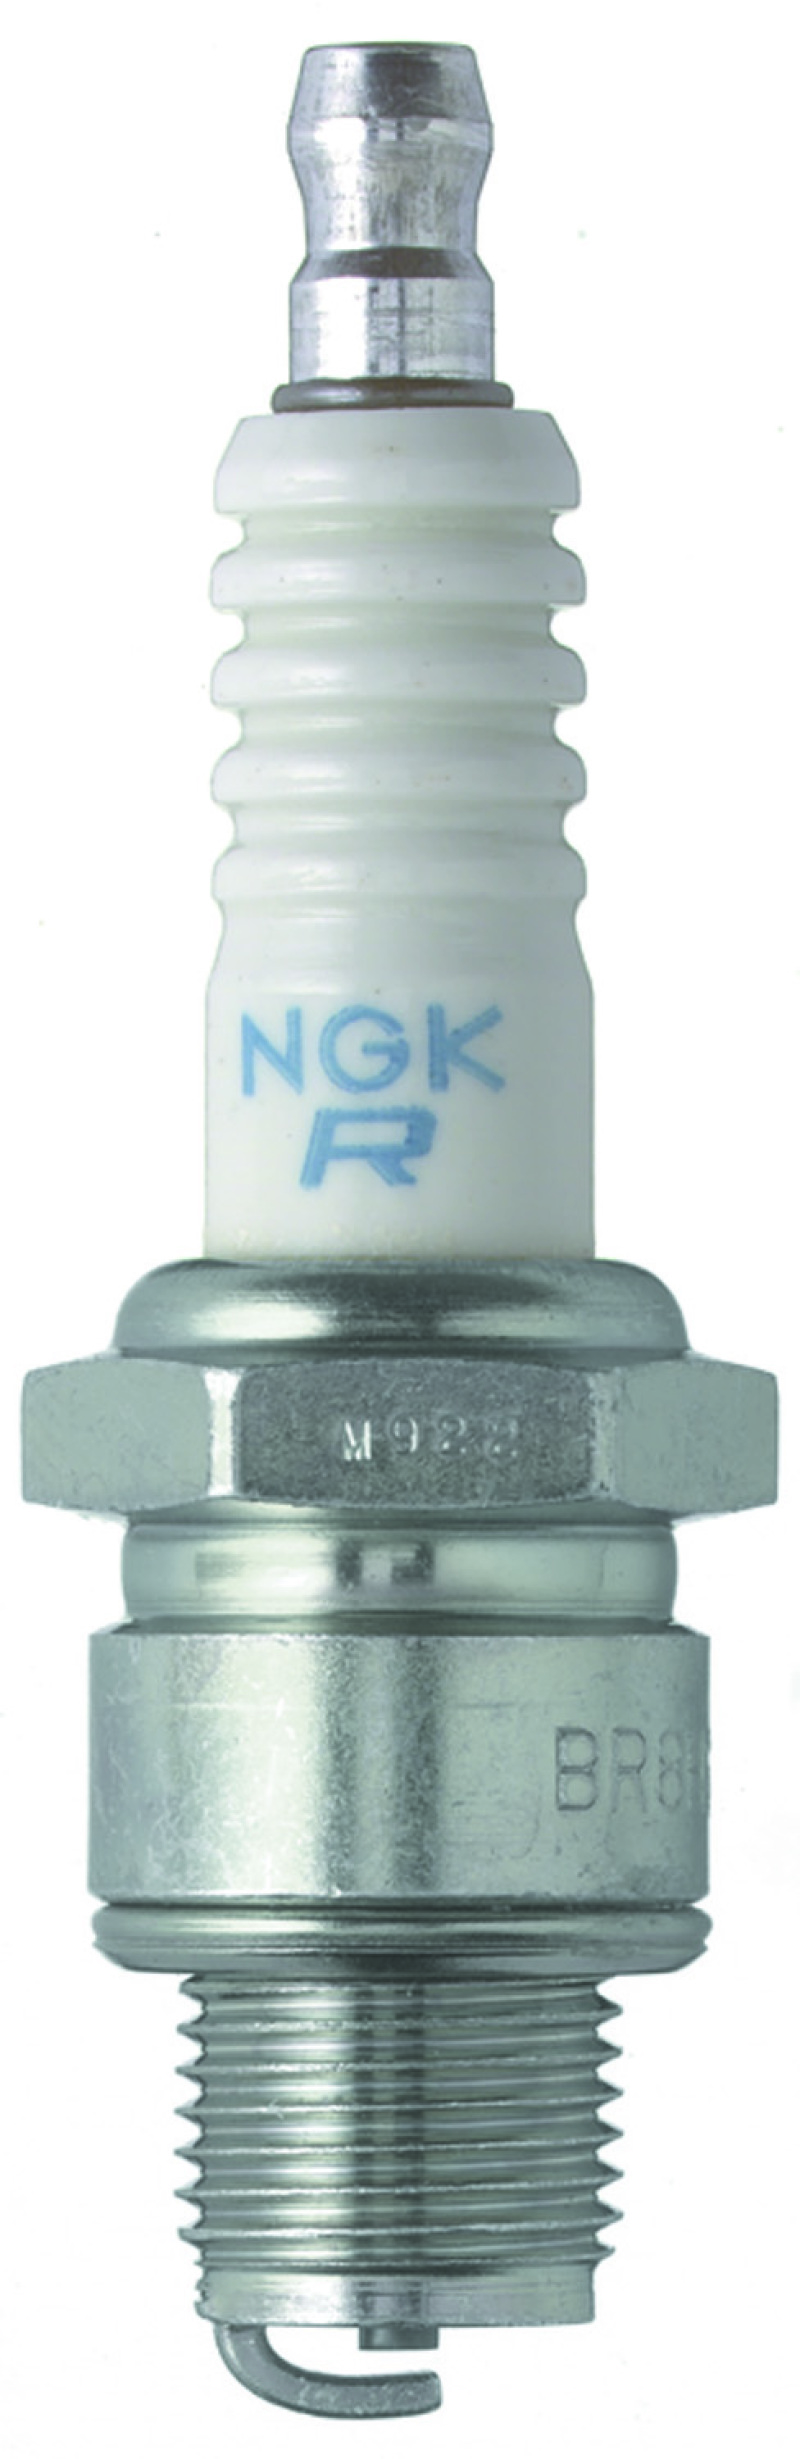 NGK Shop Pack Spark Plug Box of 25 (BR7HS-10) - 1113